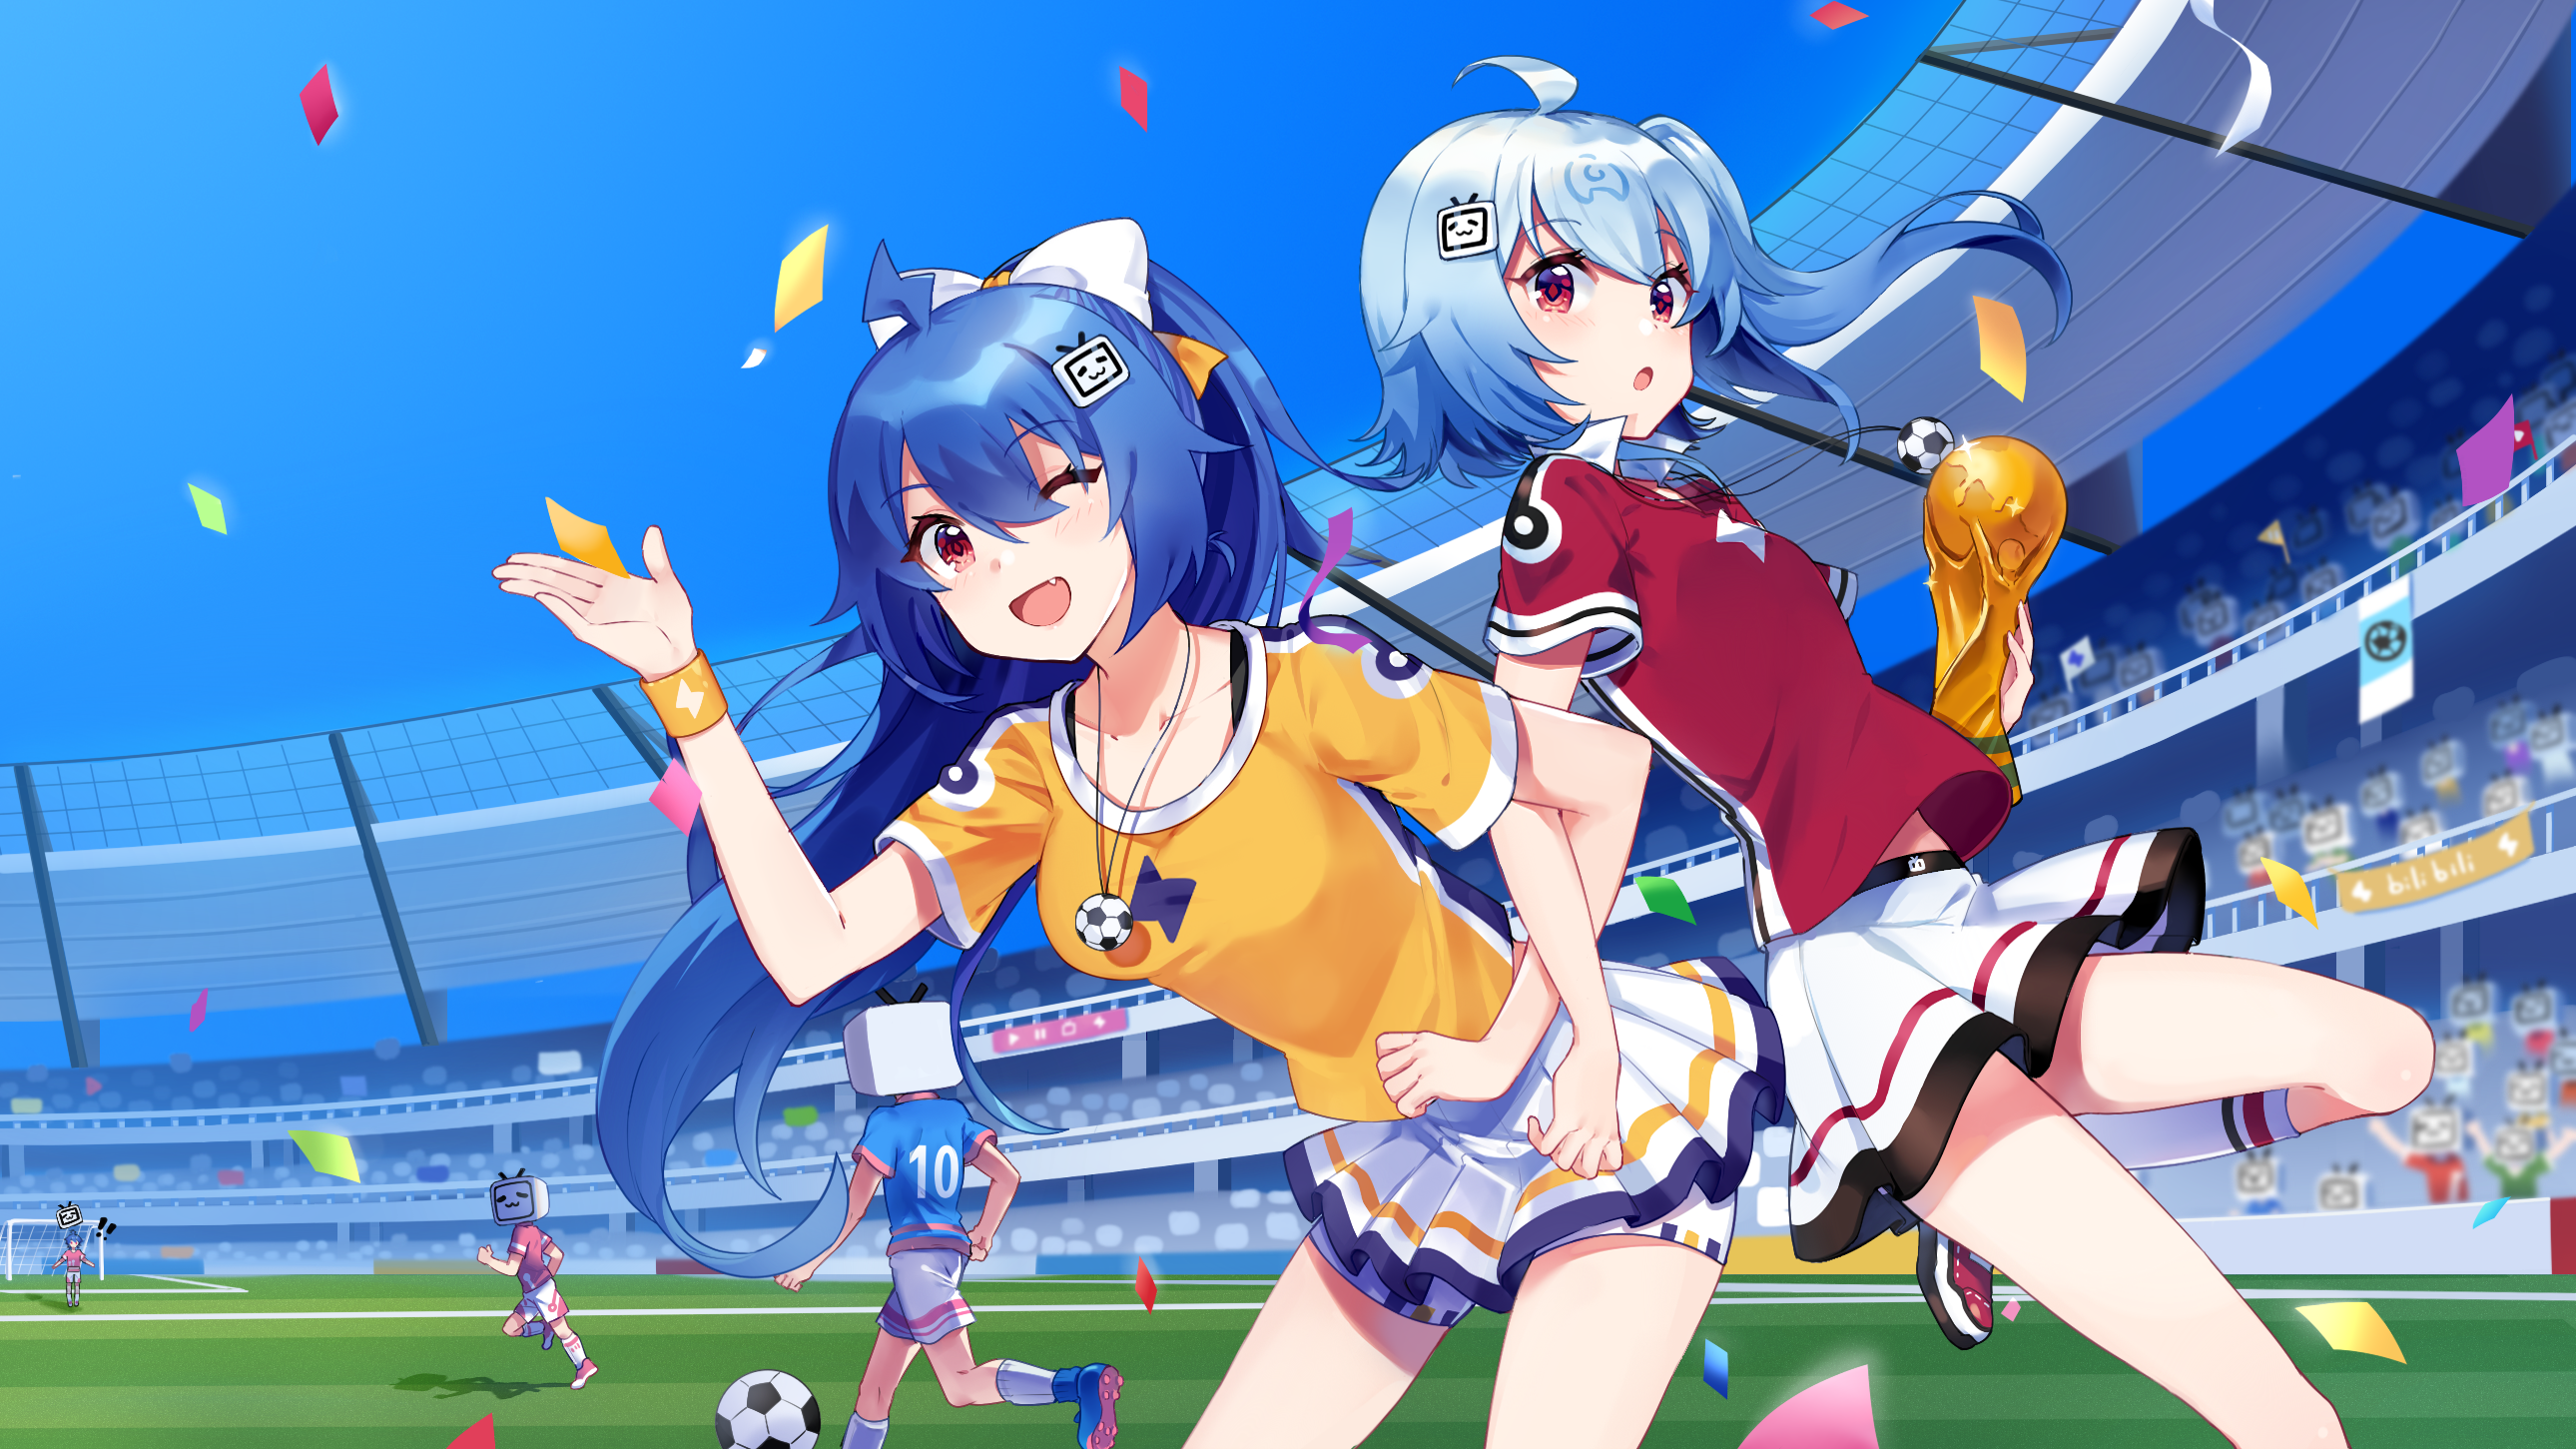 Anime 2580x1451 22(bilibili) 33(bilibili) bilibili digital art anime girls confetti soccer ball